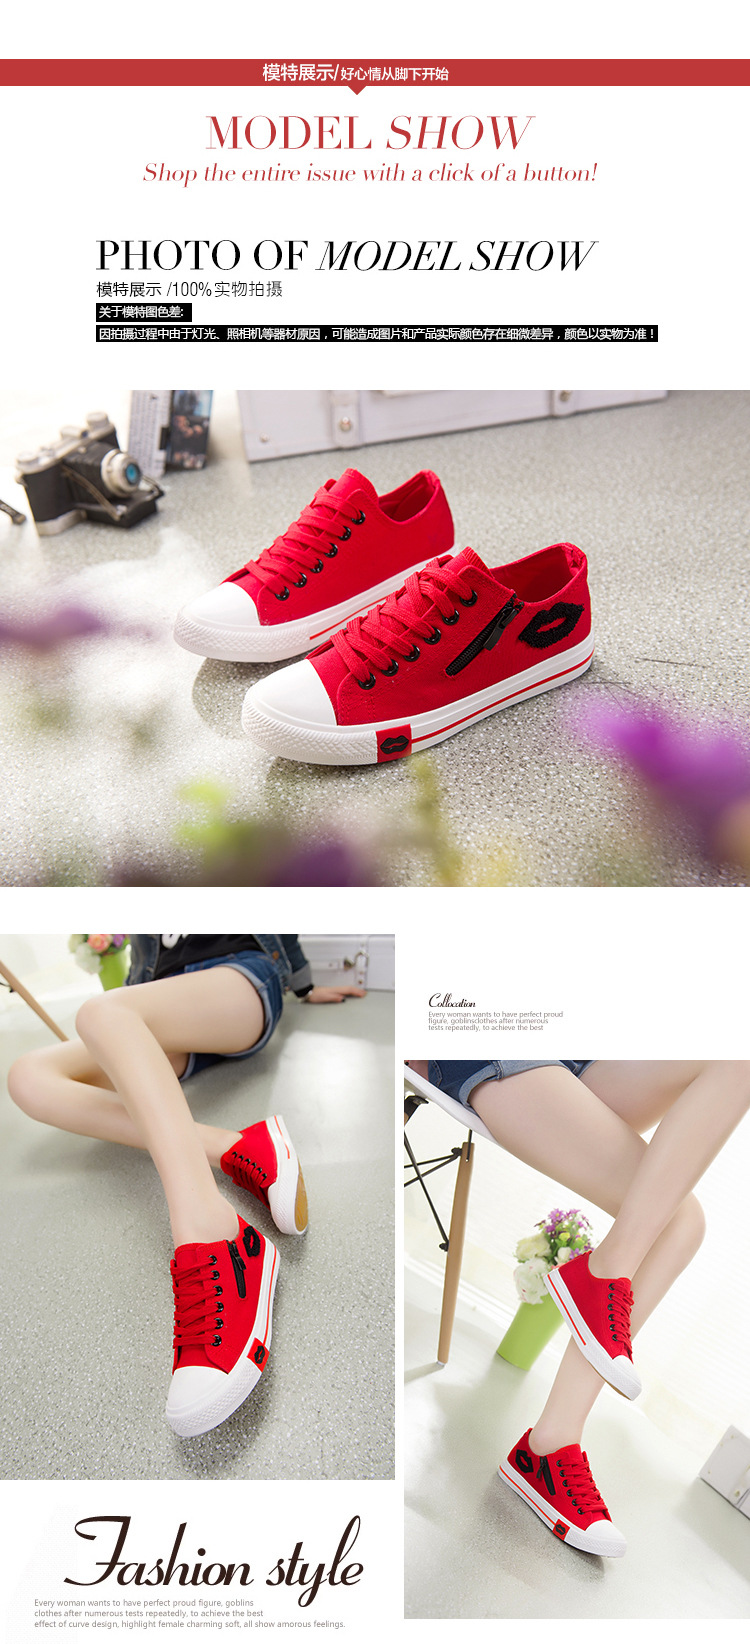 新款韩版帆布鞋女低帮系带红唇侧拉链学生平底休闲运动鞋子